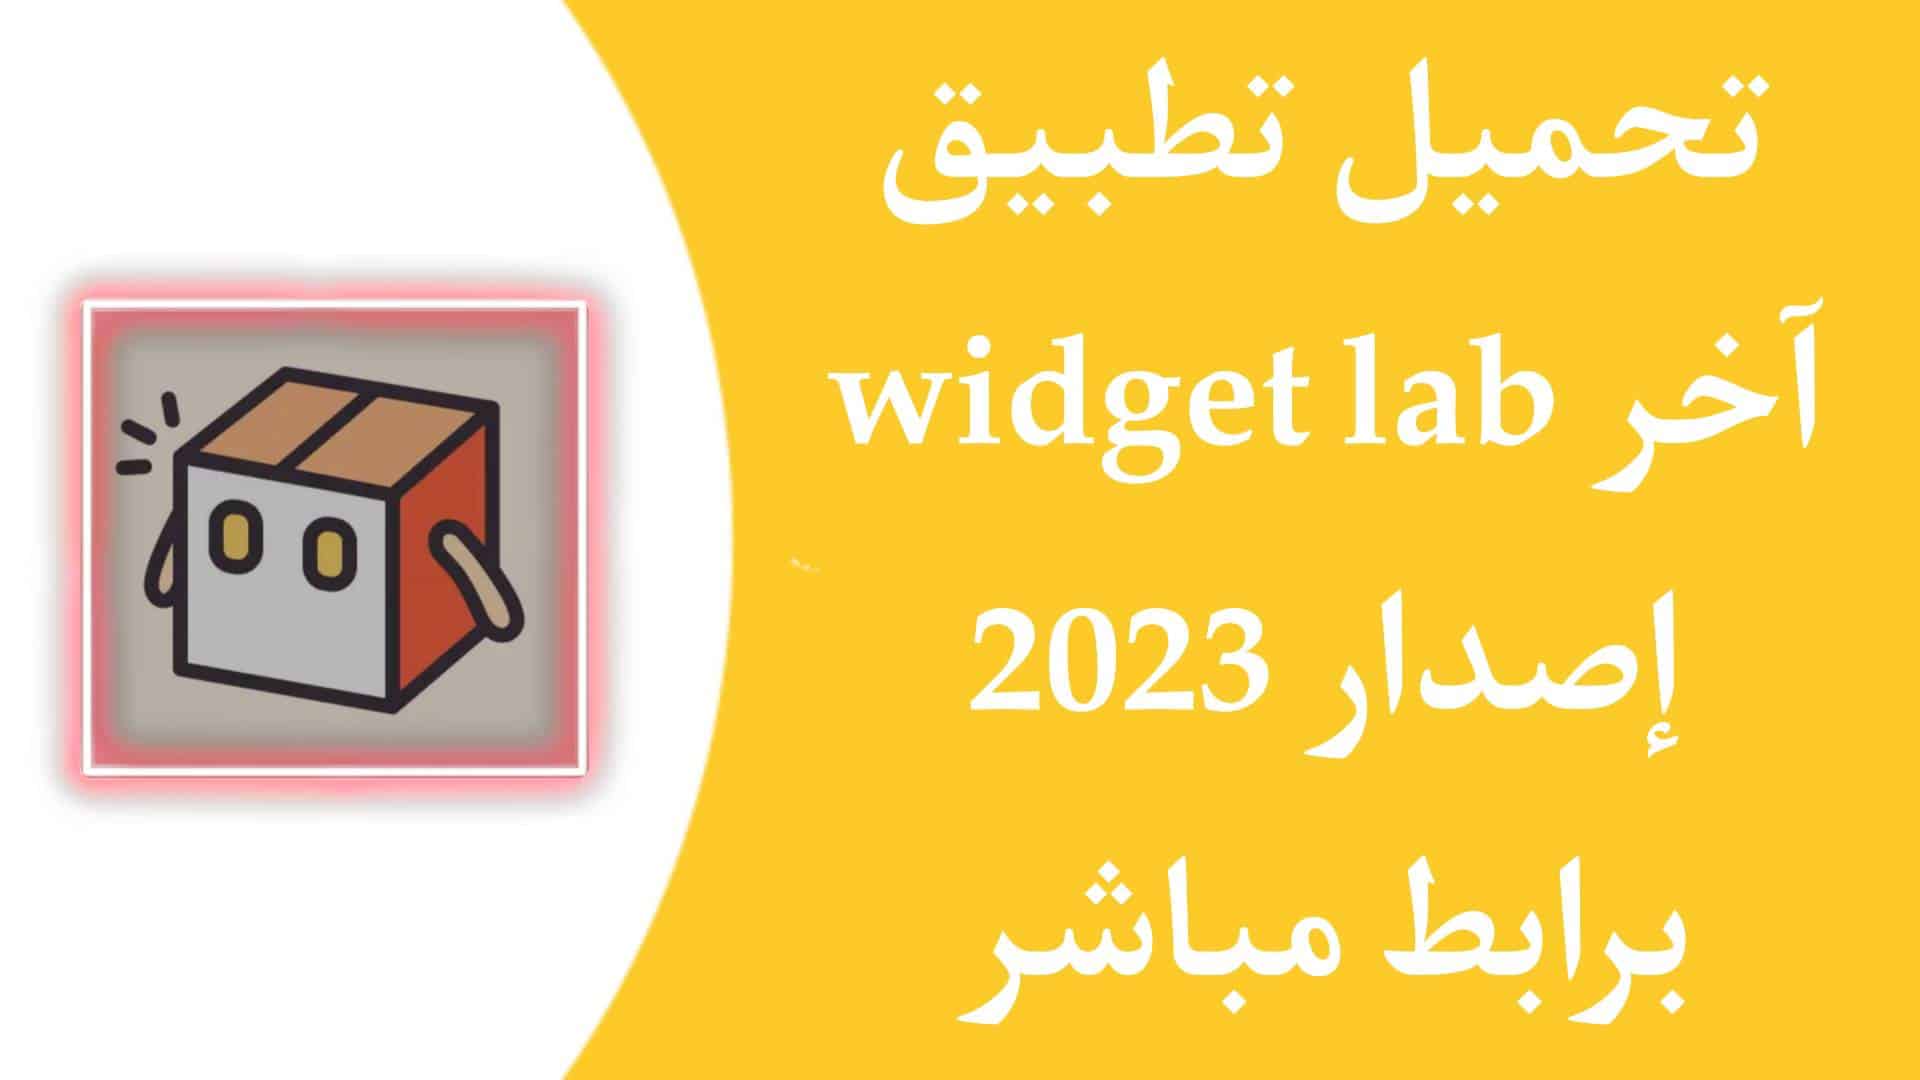 تحميل تطبيق Widget Lab APK اخر اصدار 2023 للاندرويد